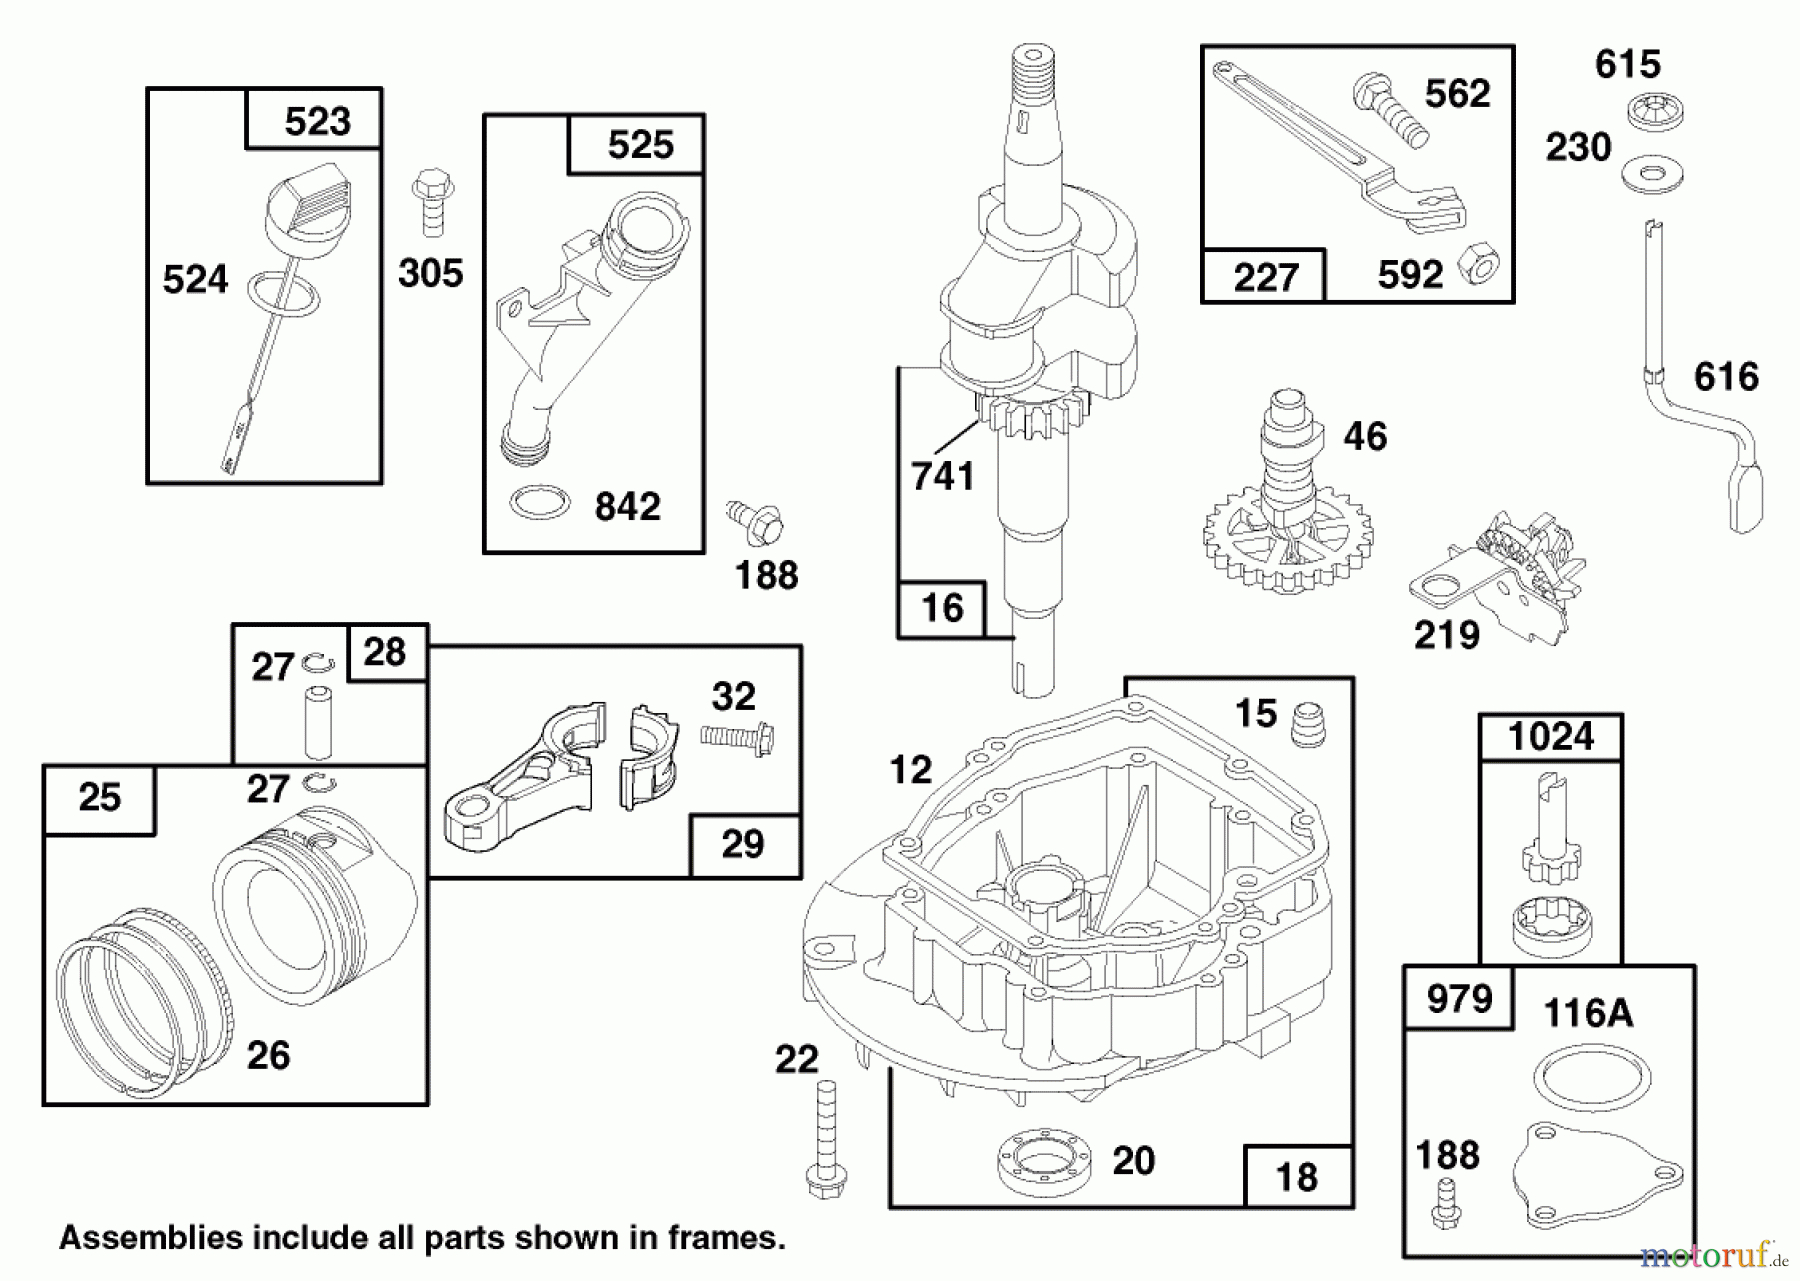  Toro Neu Mowers, Walk-Behind Seite 1 20464 - Toro Super Recycler Lawnmower, 1997 (7900001-7999999) ENGINE GTS 150 #2